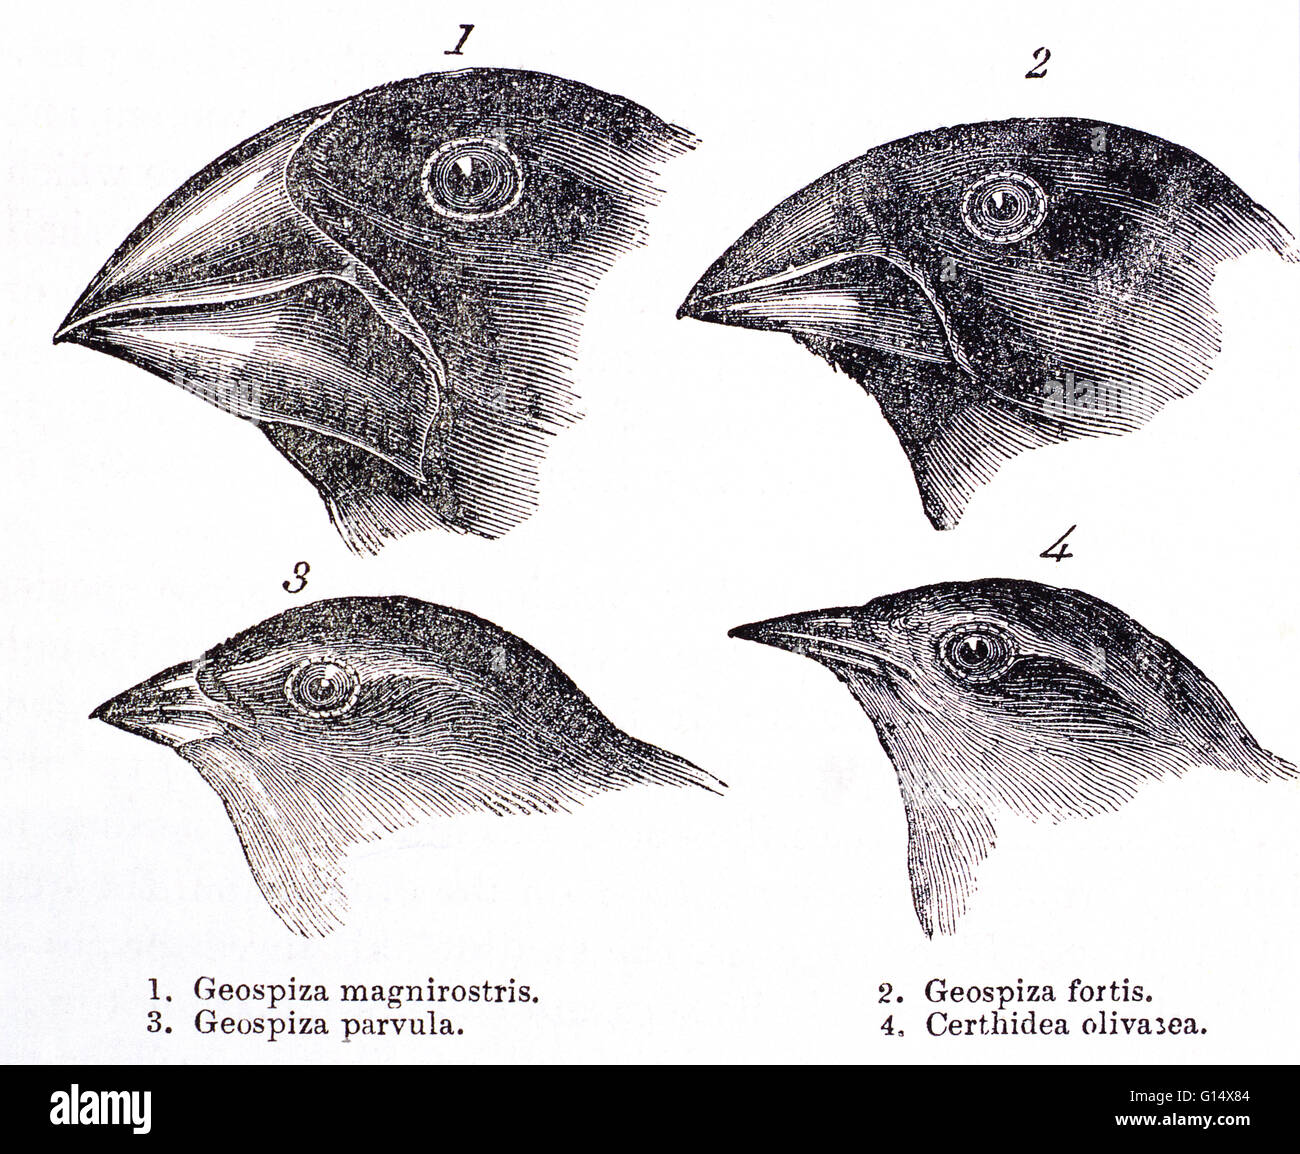 Les pinsons des Galapagos. Œuvres historiques des chefs de pinsons des Galapagos, faite par Charles Darwin dans son livre "Le Voyage d'un naturaliste", Londres, 1889. Ces études ont aidé sa théorie de l'évolution. Darwin a tiré la conclusion qu'ils sont tous venus à partir d'un anc Banque D'Images